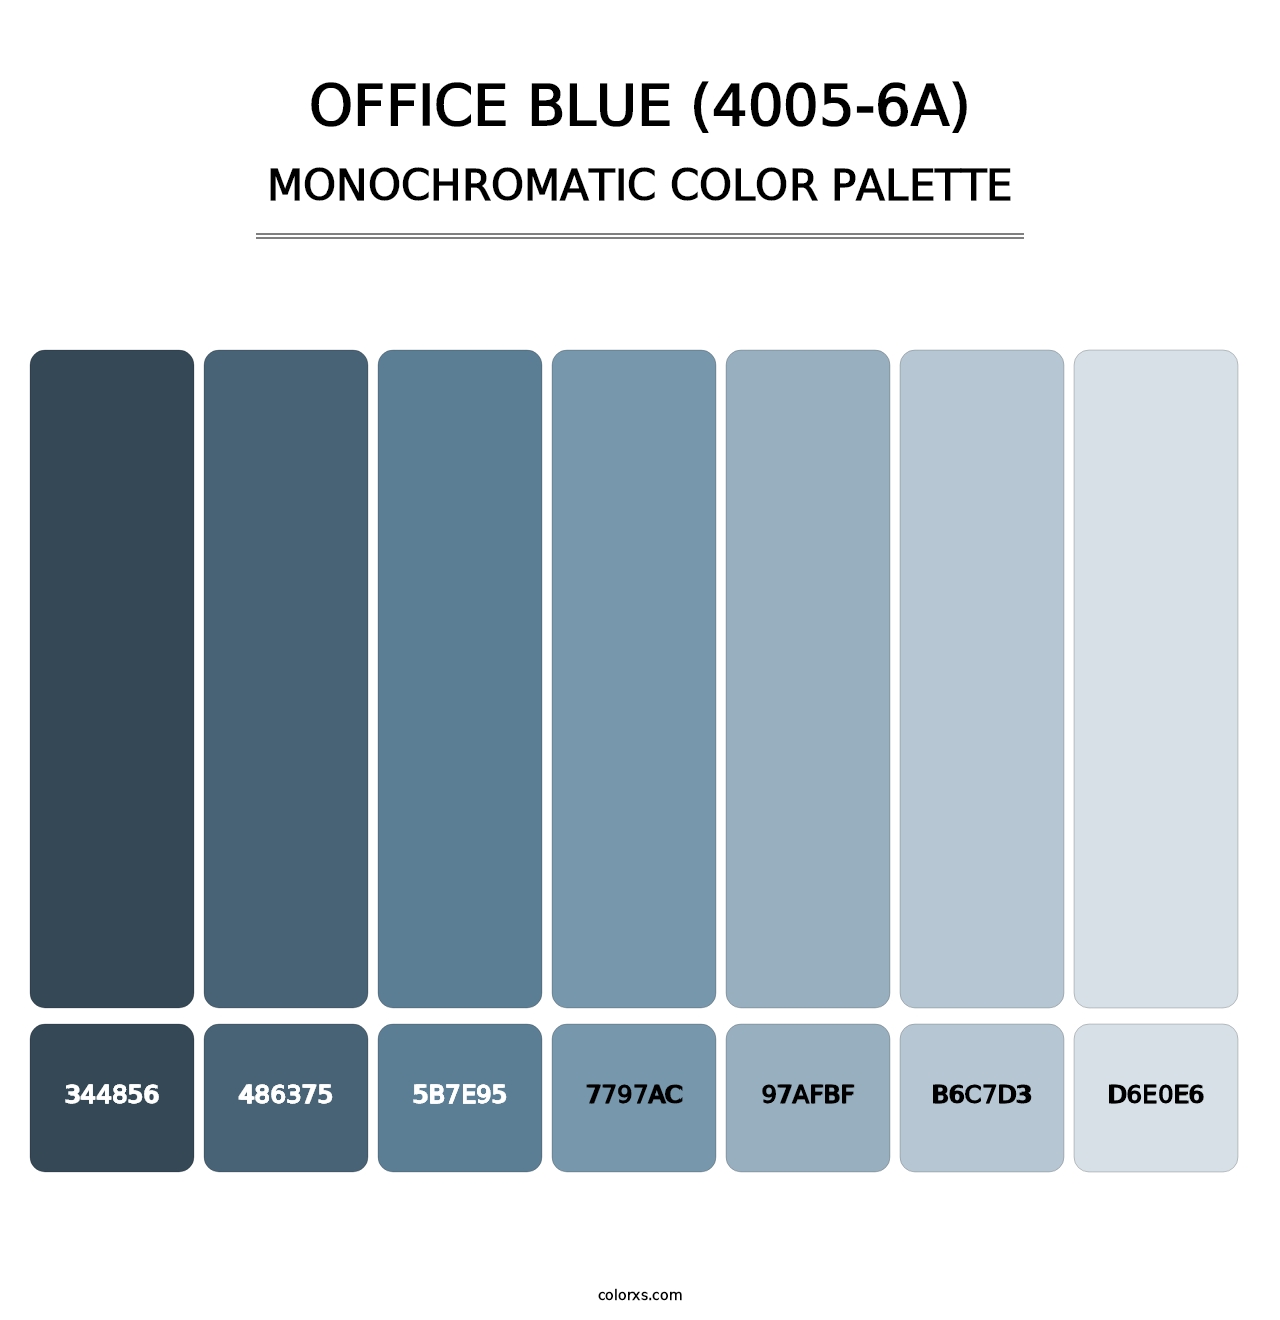 Office Blue (4005-6A) - Monochromatic Color Palette